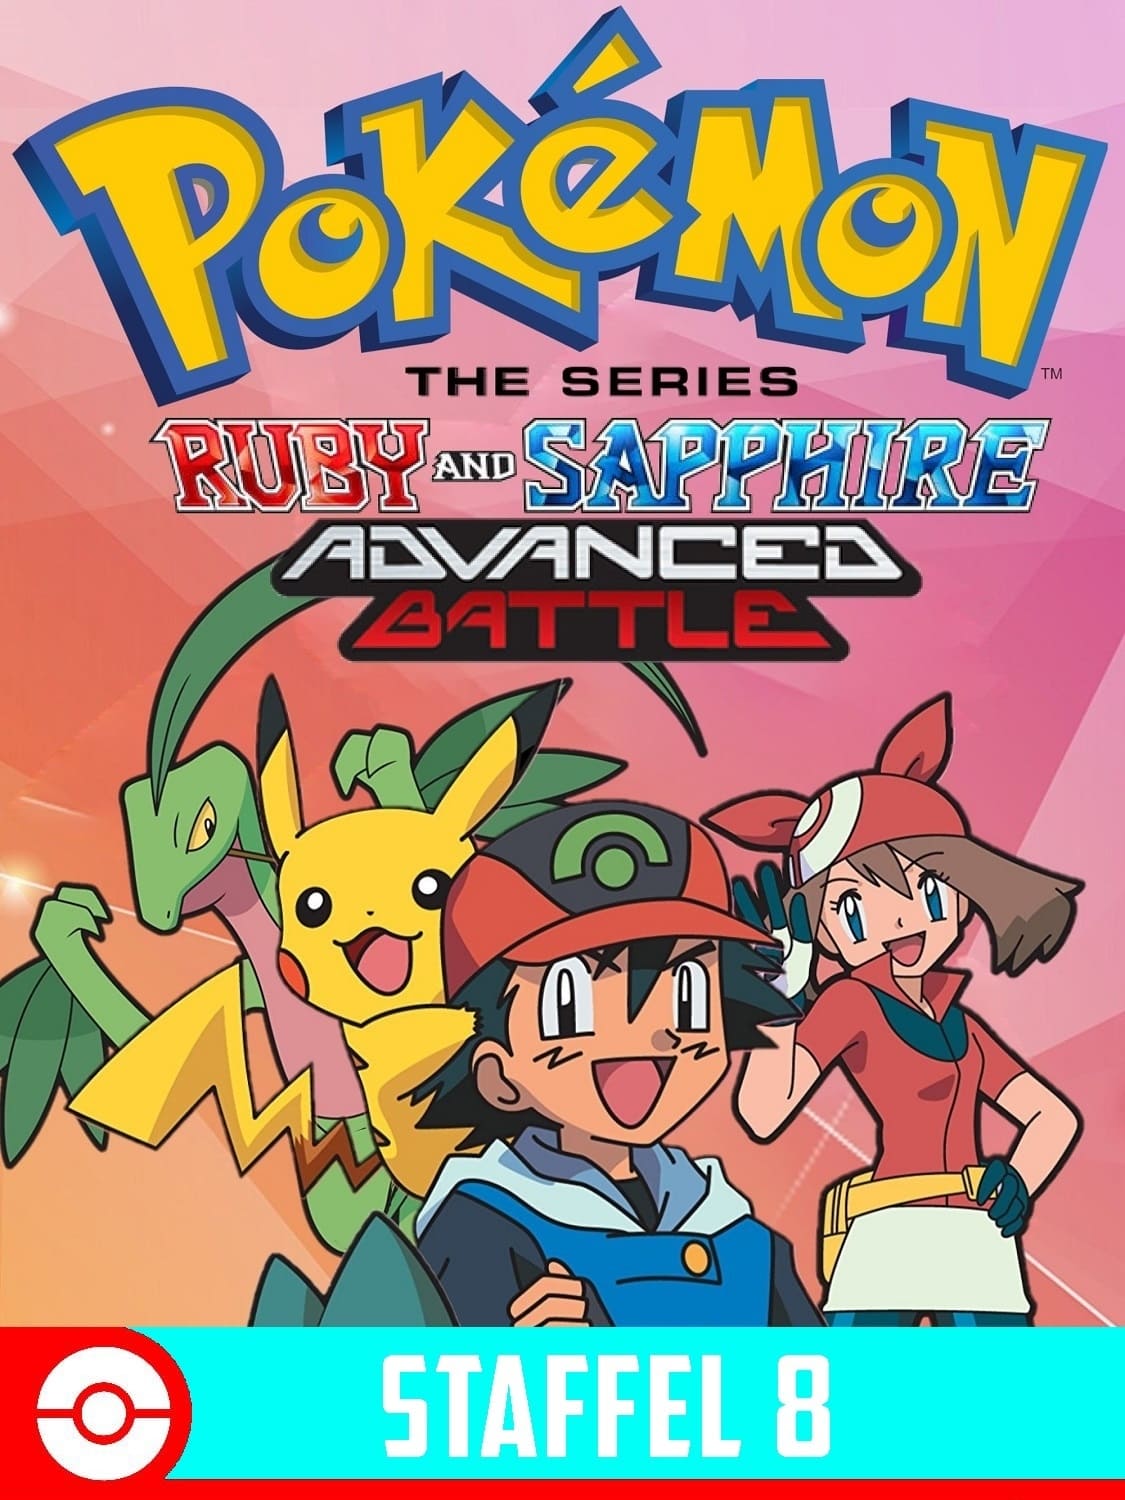 Pokémon (TV Series 1997-2023) - Cartazes — The Movie Database (TMDB)